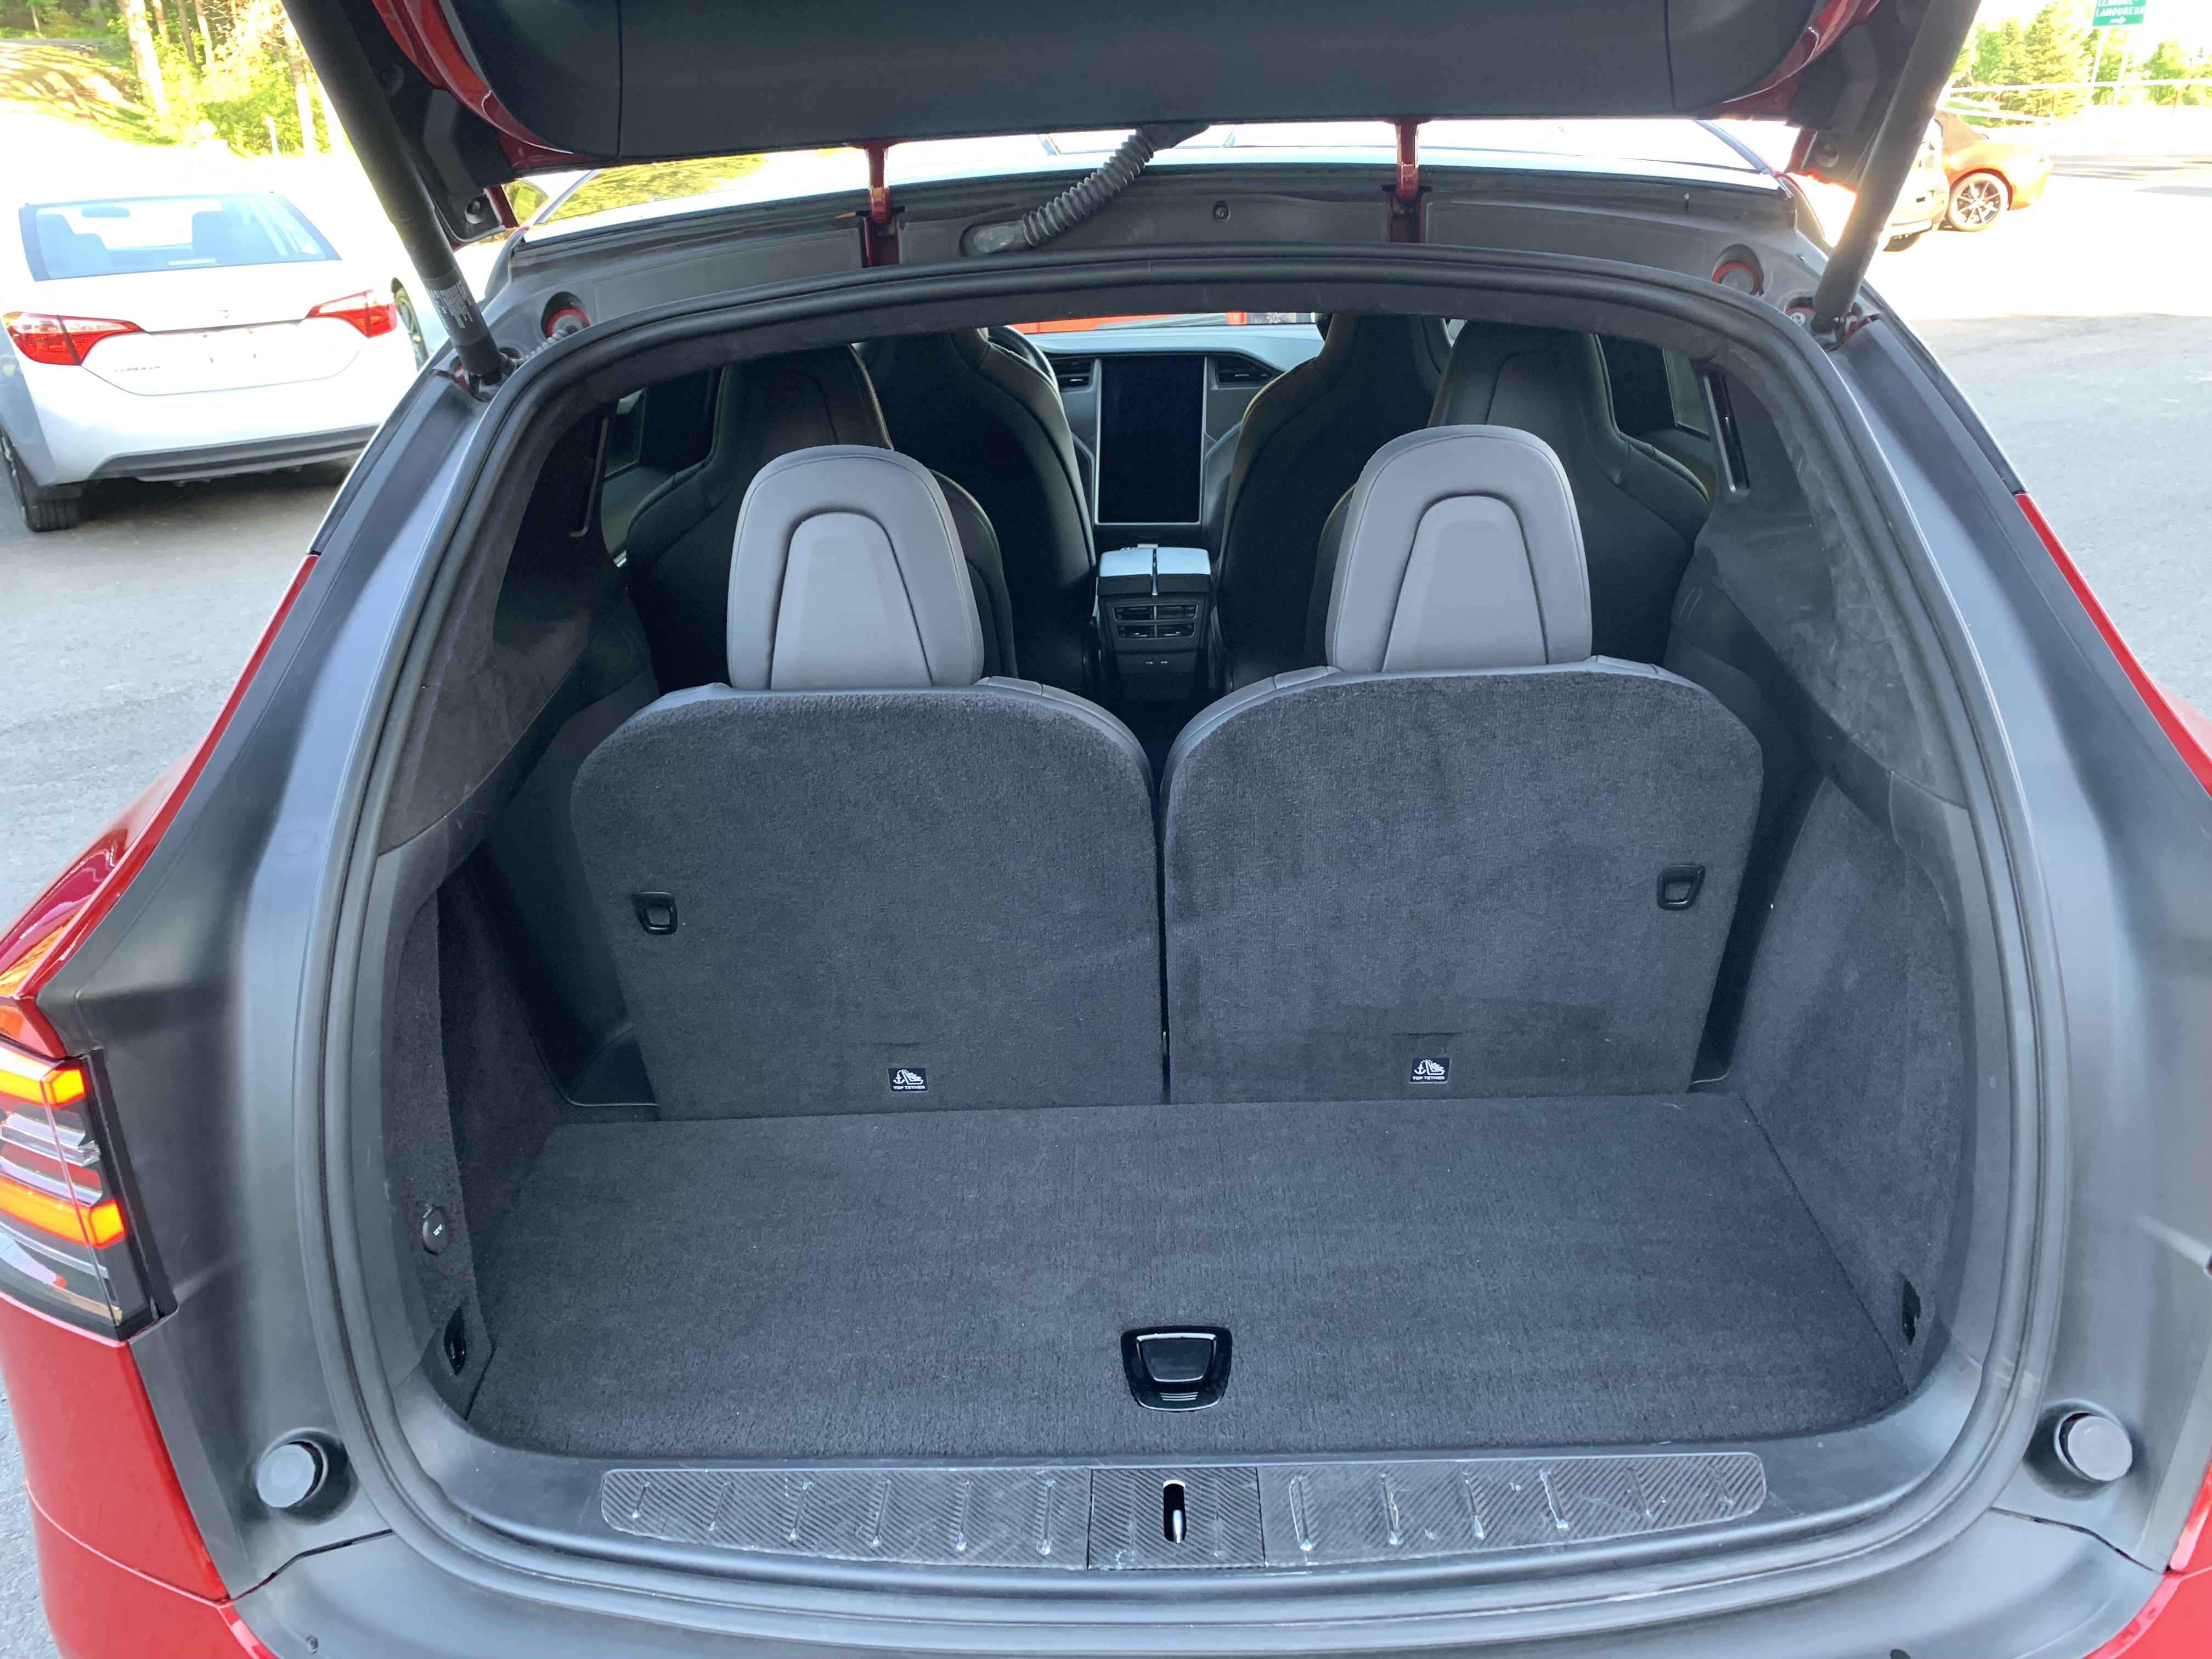 Véhicule Tesla Model S100D $64941 2018 à vendre près de Sherbrooke, JN Auto